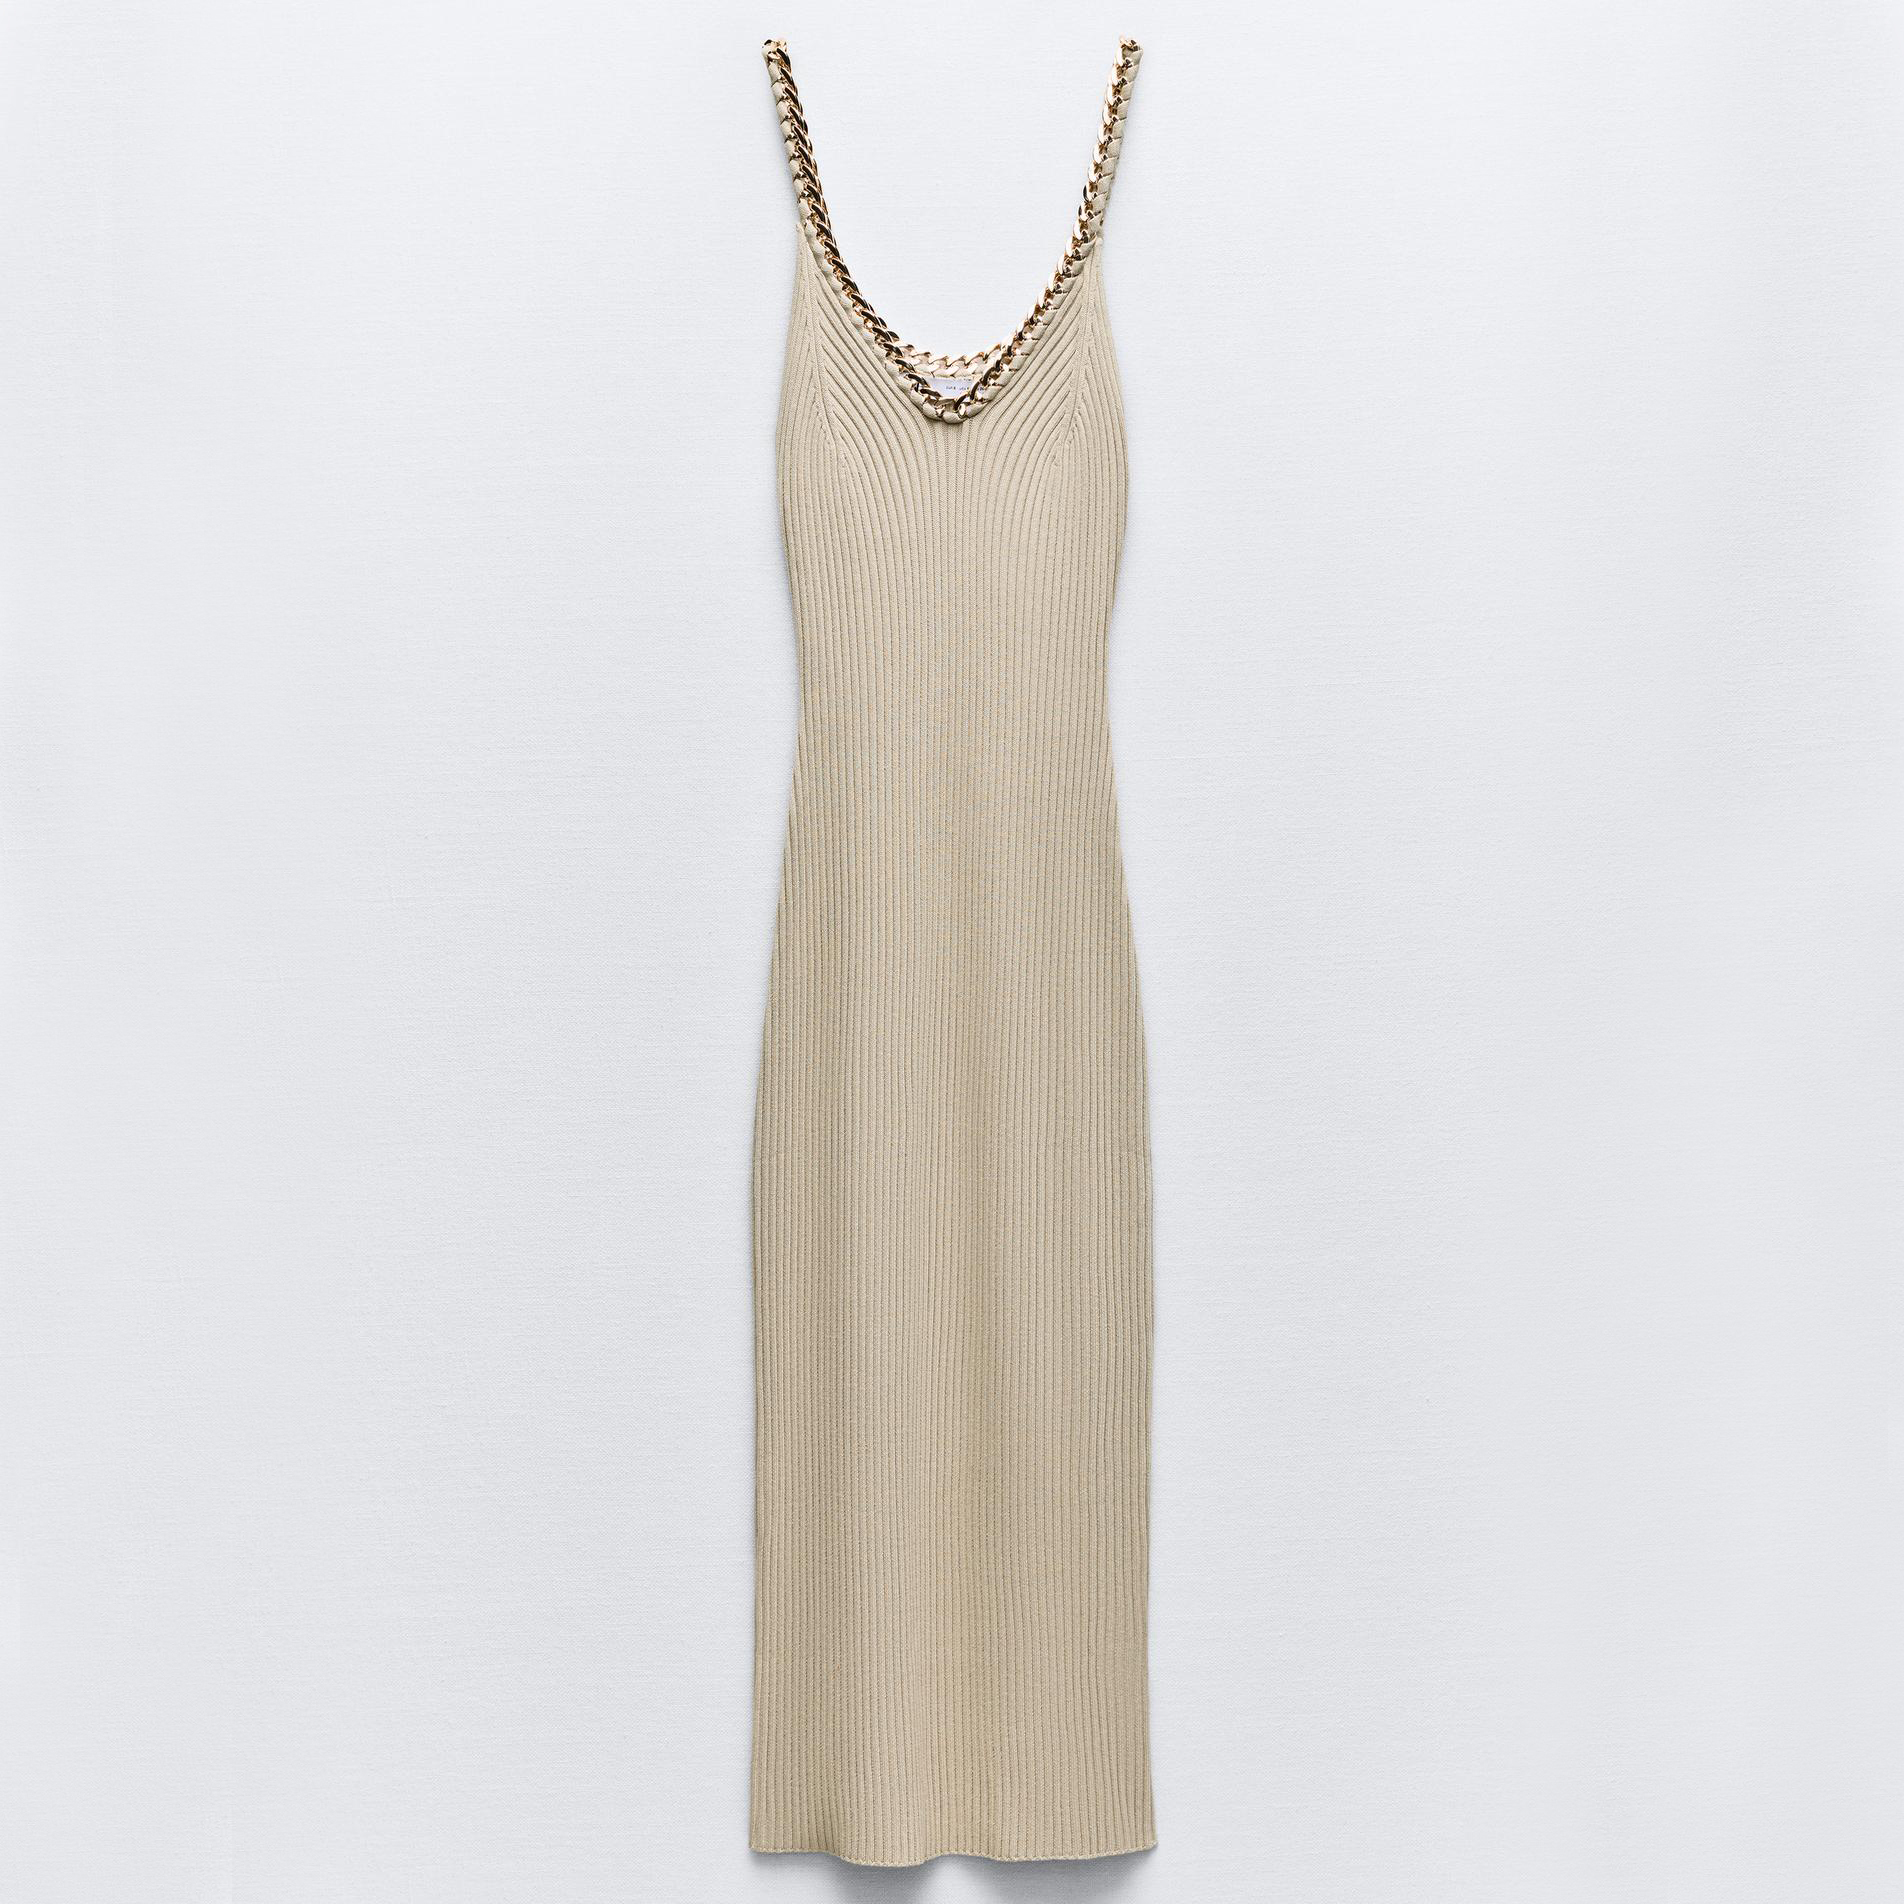 Платье Zara Ribbed Knit Midi With Chains, бежевый хаки платье свадебное трапециевидное с v образным вырезом длинным рукавом и кружевной аппликацией